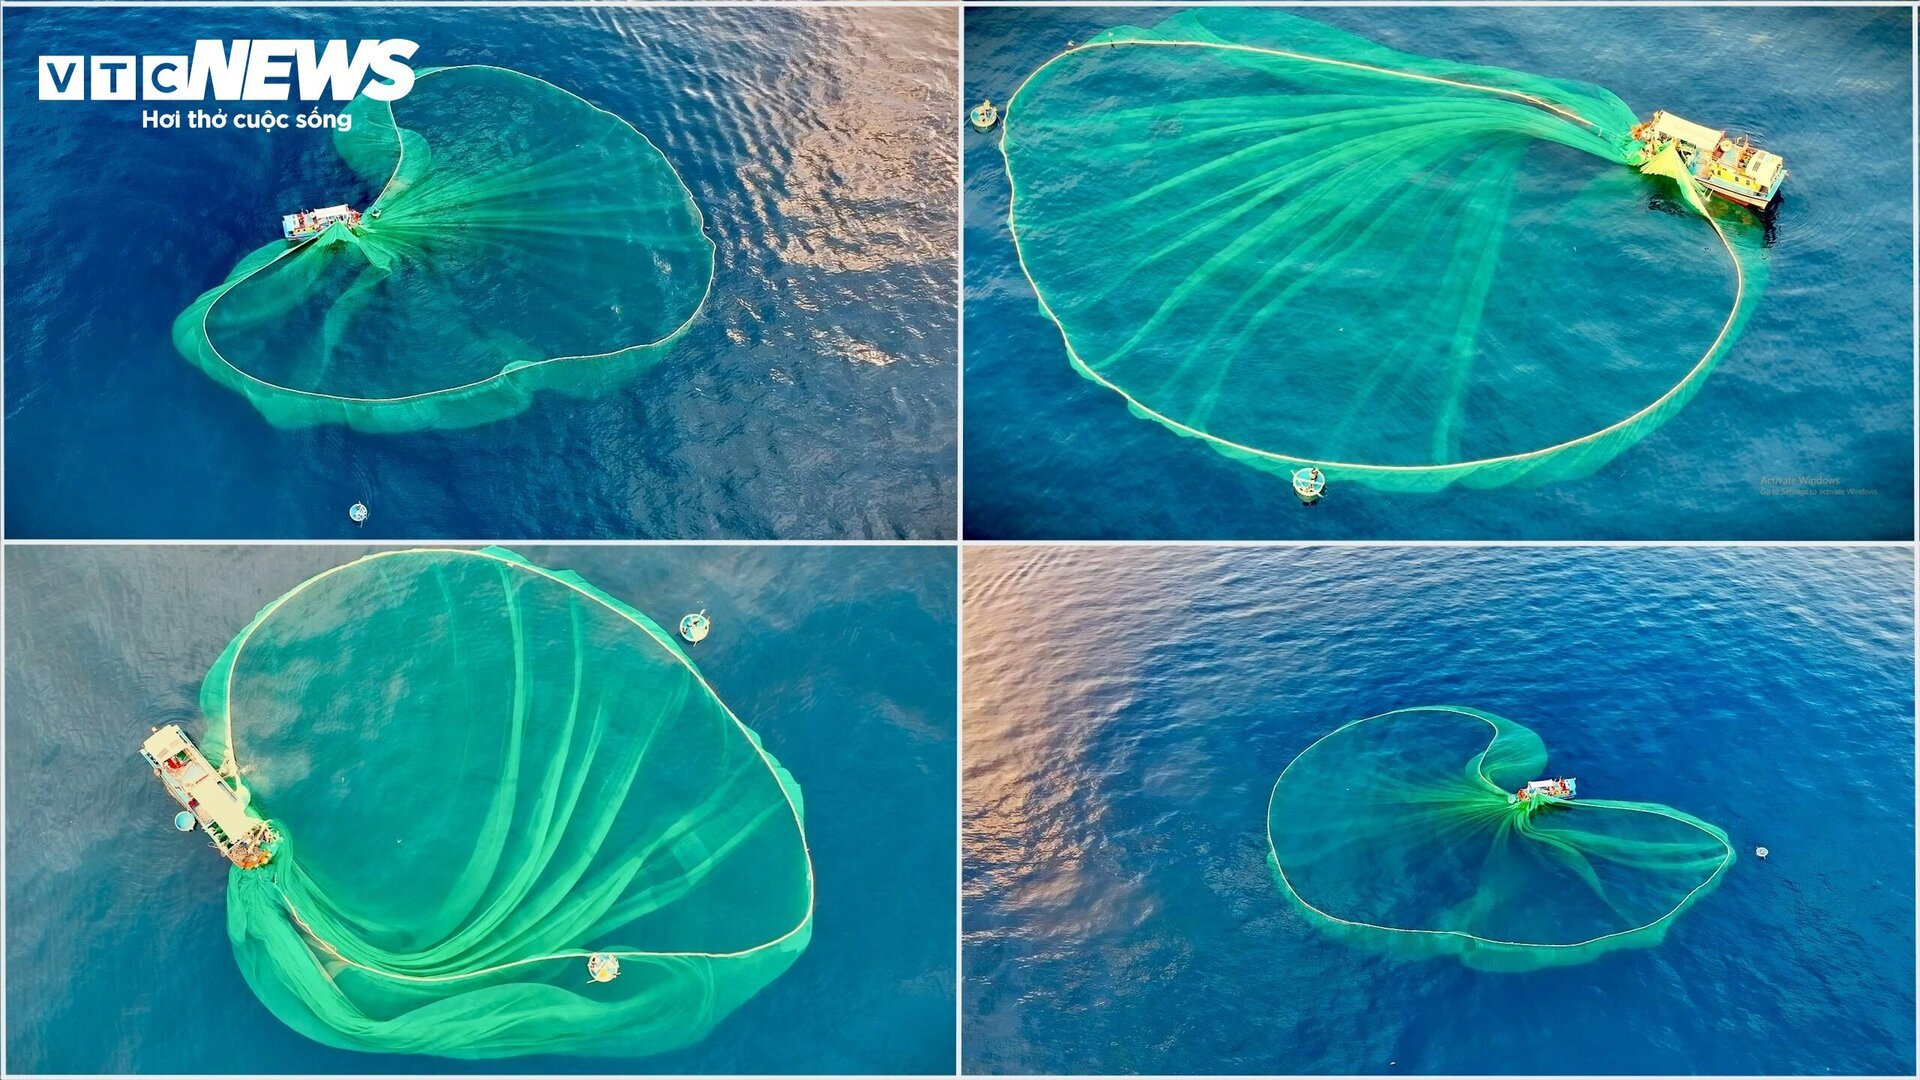 Mê mẩn mẻ lưới vẽ ‘trái tim của biển’ ở đảo Hòn Yến, Phú Yên - 5